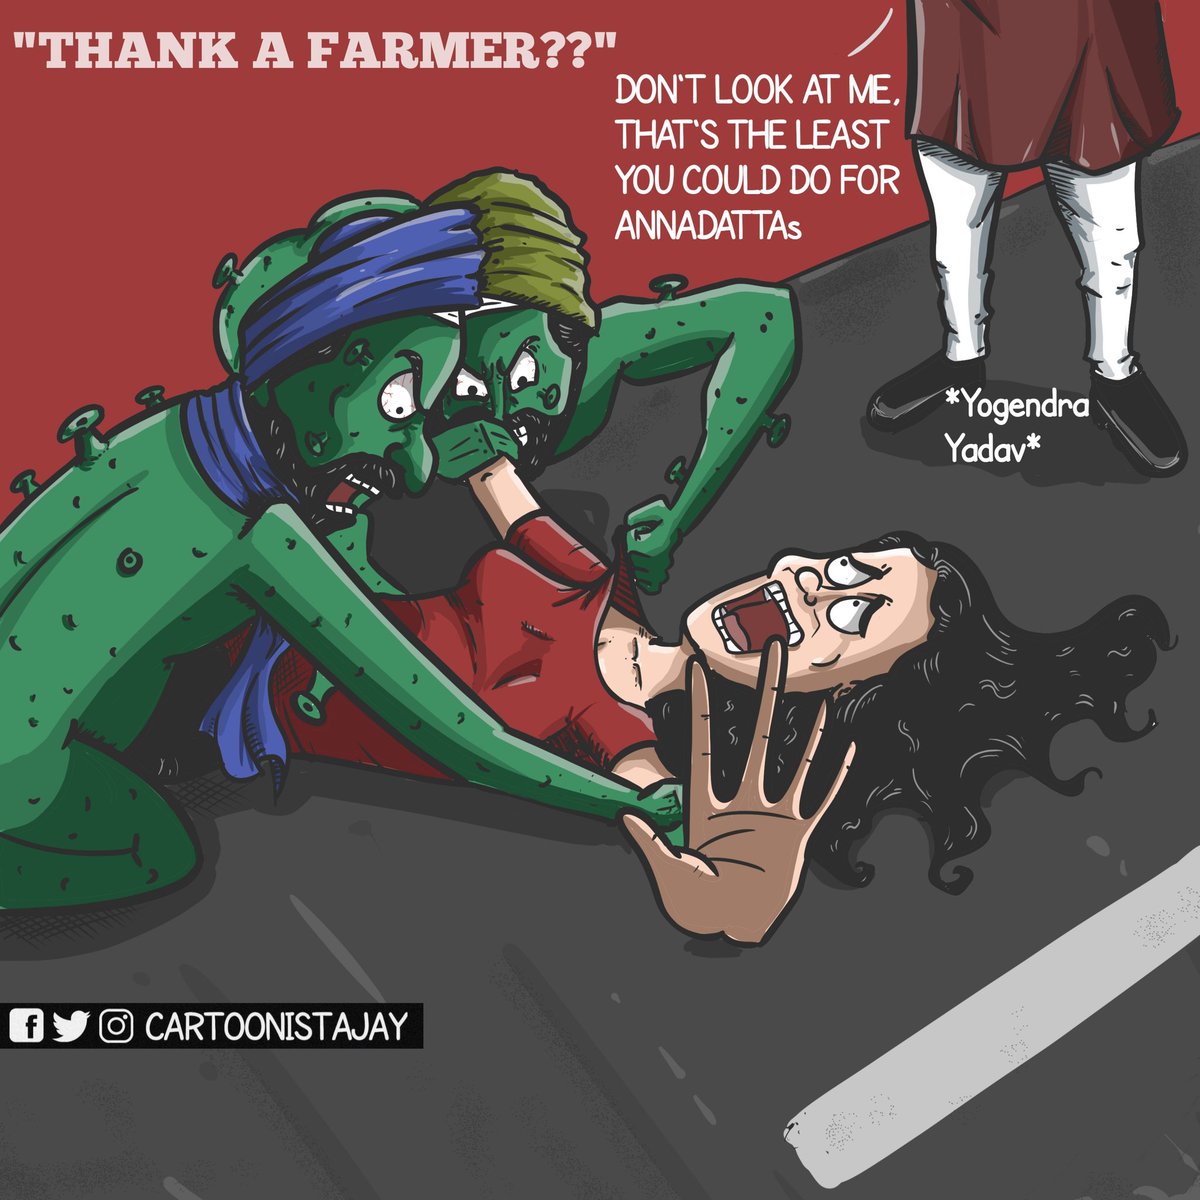 भाई .@Cartoonistajay 1000 शब्दों को एक cartoon में पिरो दिया।

#Rape #farmersrprotest